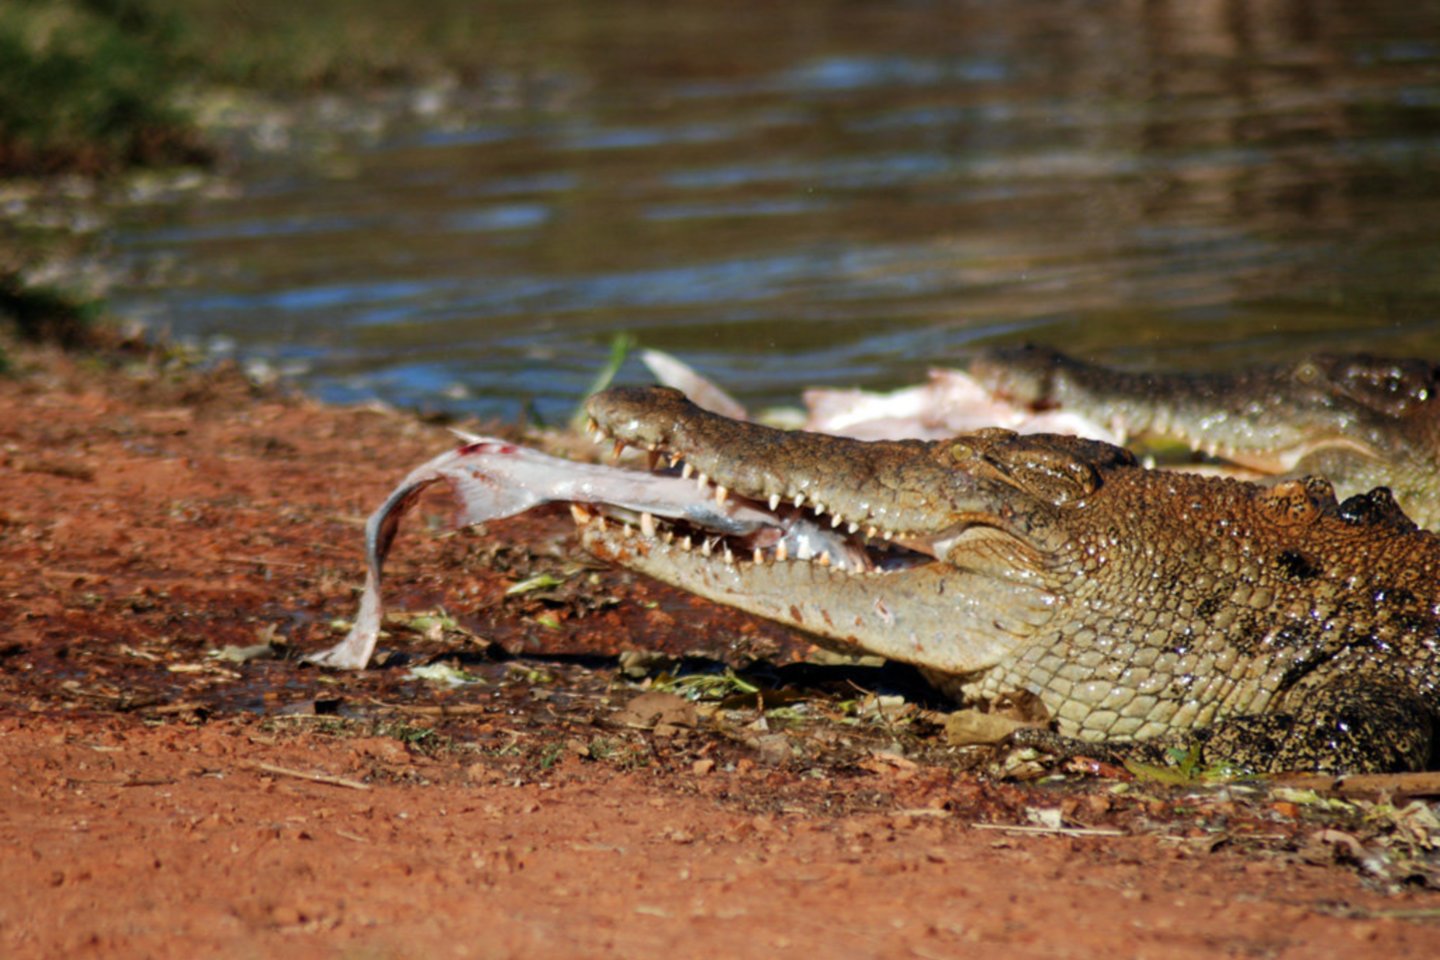  Briaunagalviai krokodilai, kurie gali išaugti iki 7 m ilgio ir sverti daugiau kaip toną, yra dažni atogrąžose Australijos šiaurėje ir per metus nužudo vidutiniškai po du žmones.<br> Wikipedia nuotr.